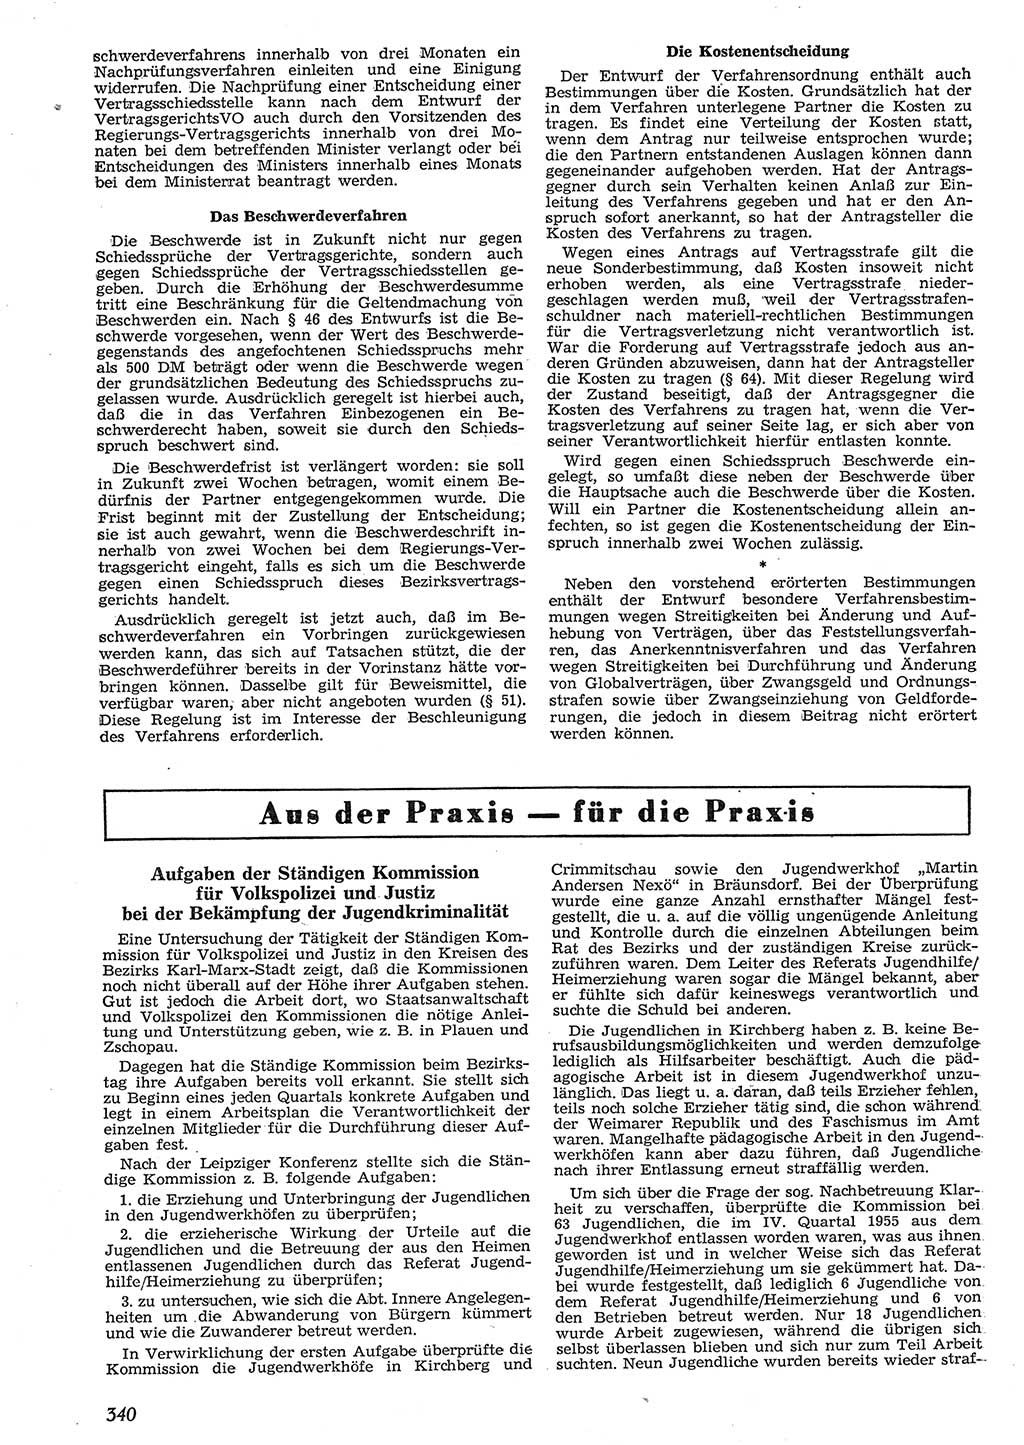 Neue Justiz (NJ), Zeitschrift für Recht und Rechtswissenschaft [Deutsche Demokratische Republik (DDR)], 10. Jahrgang 1956, Seite 340 (NJ DDR 1956, S. 340)